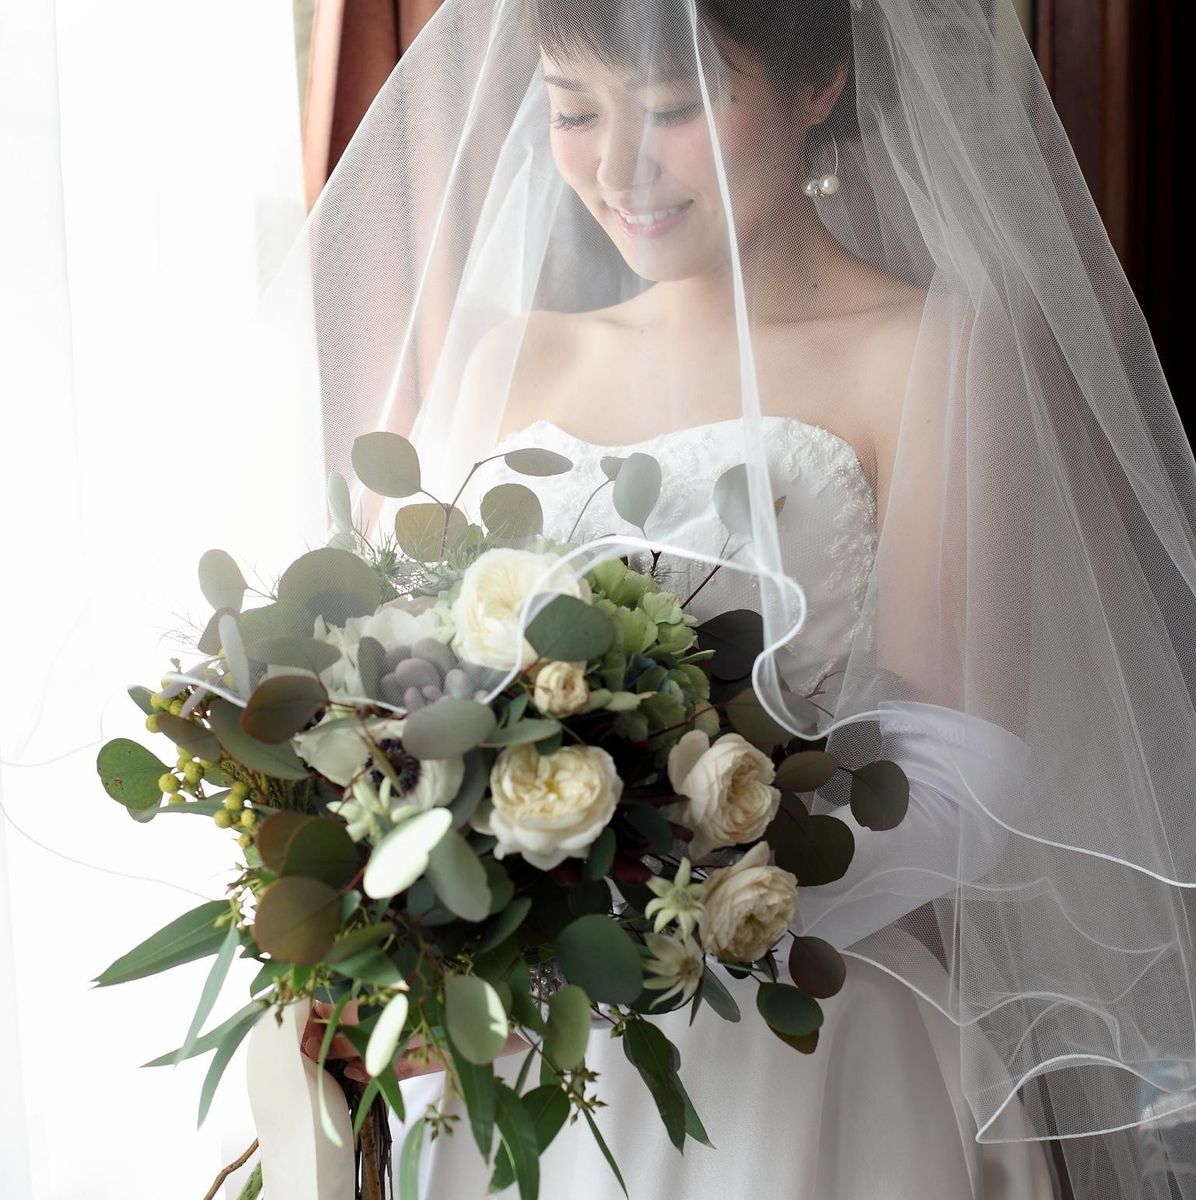 kim_wedding_tanaさんのジェームス邸(神戸市指定有形文化財)写真1枚目